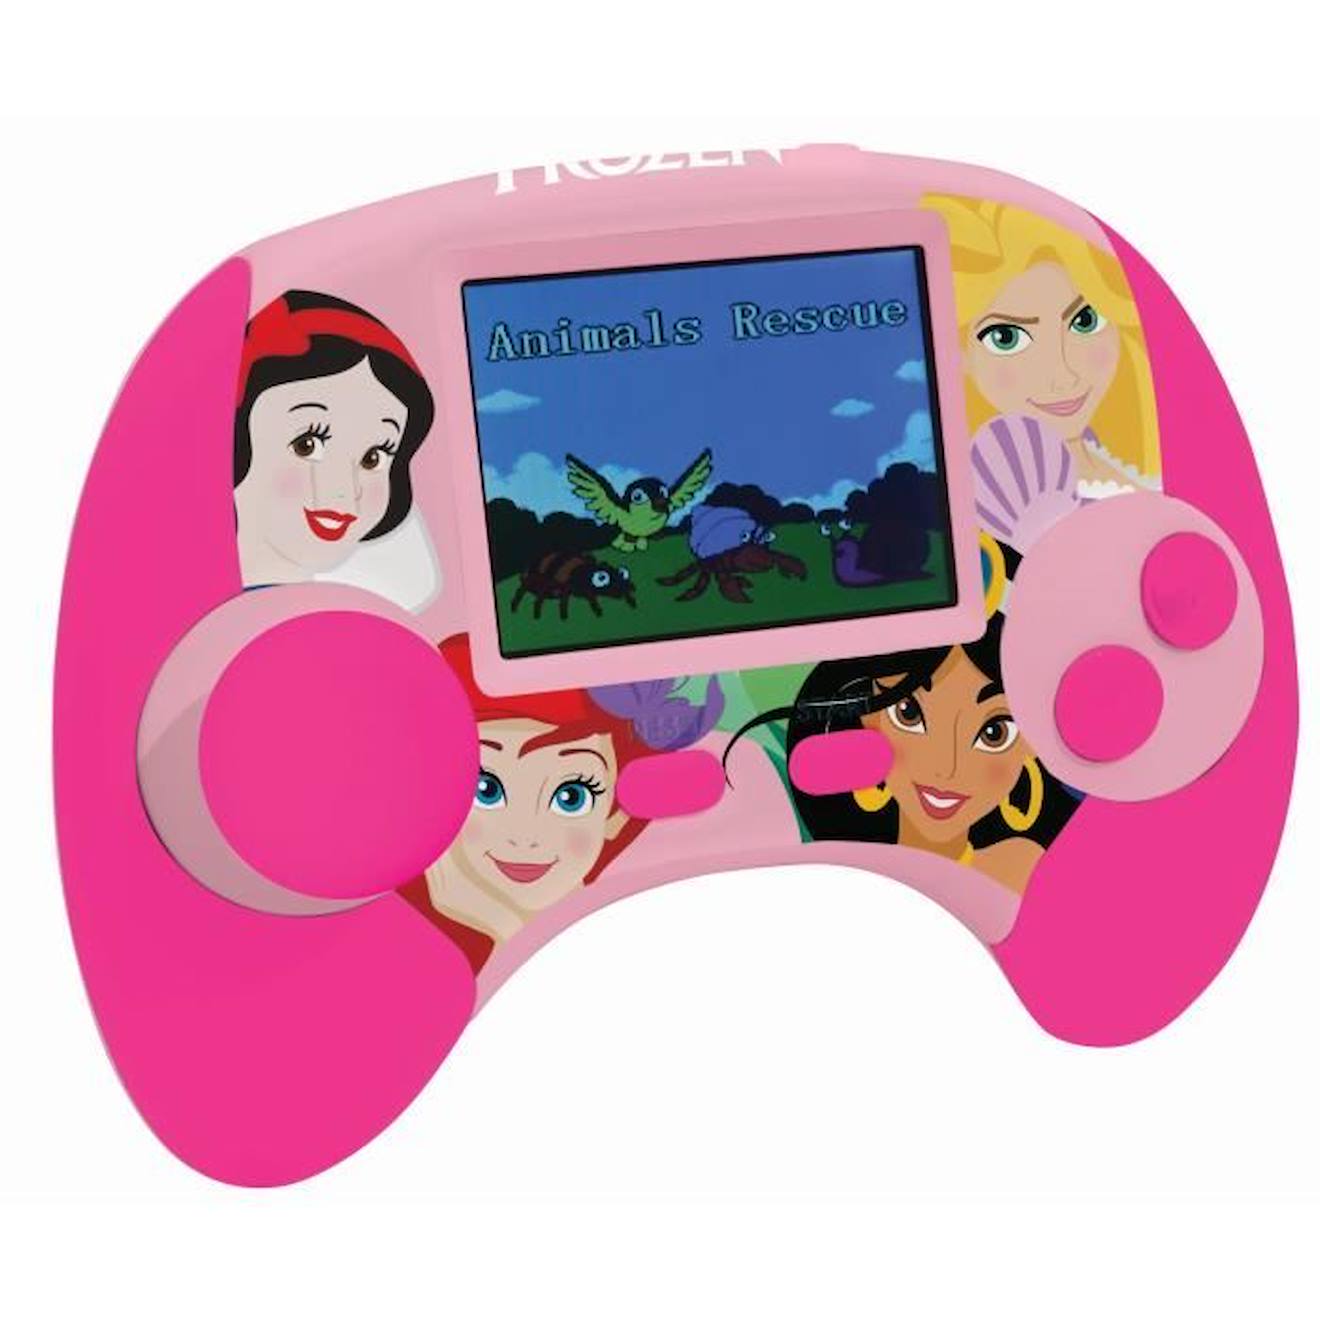 Console Éducative Bilingue Princesses Disney Avec Écran Lcd Fr-en Rose